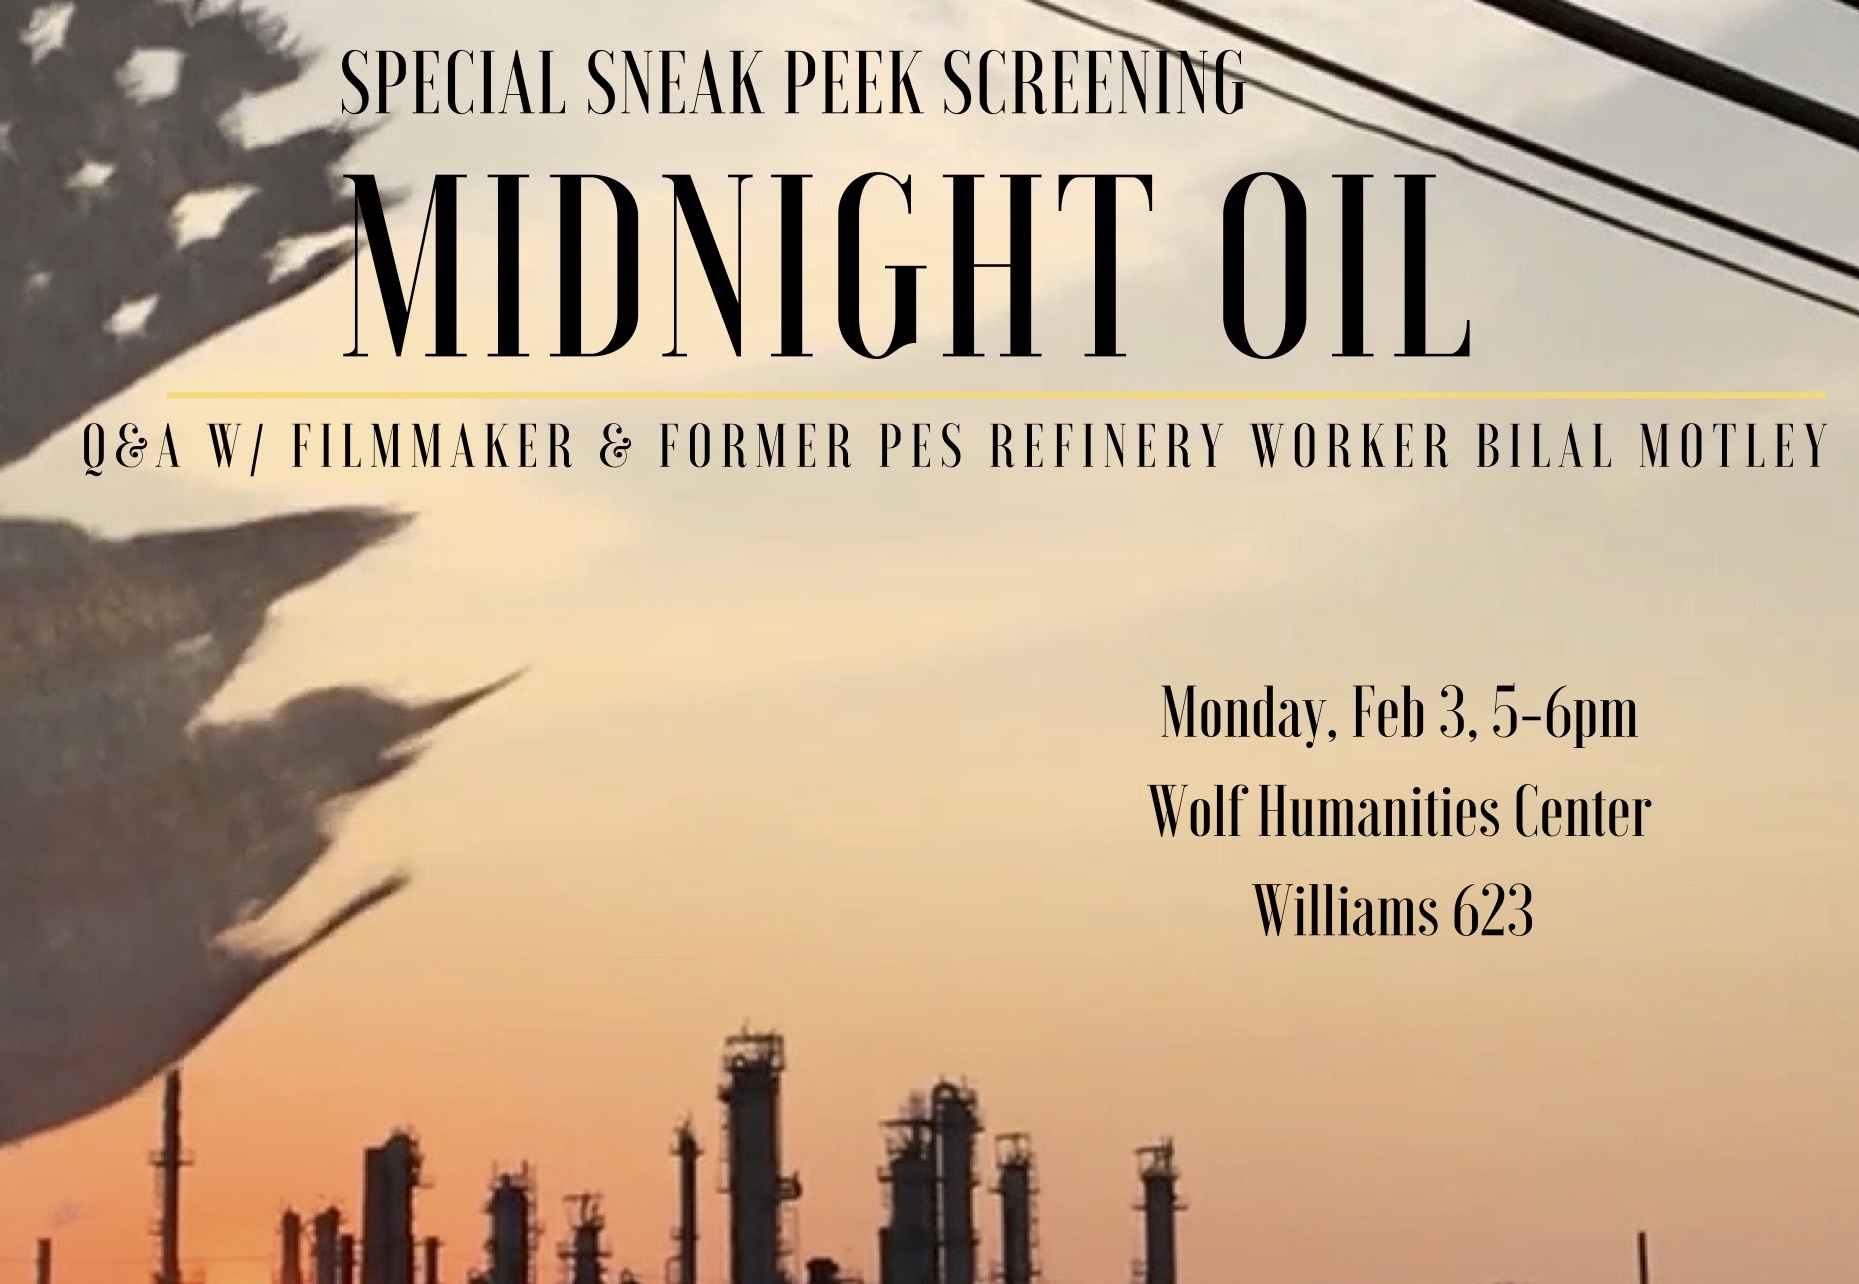 midnight oil screening poster